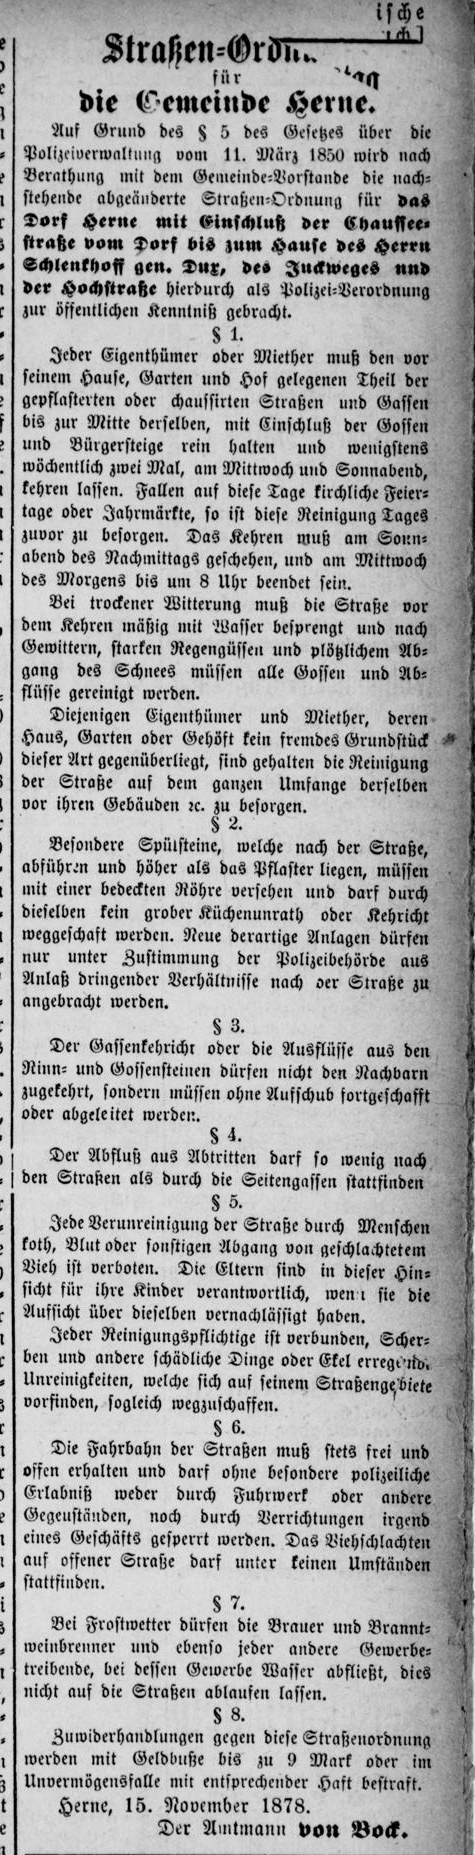 Emscher Zeitung-1878-11-22-Straßenordnung.png